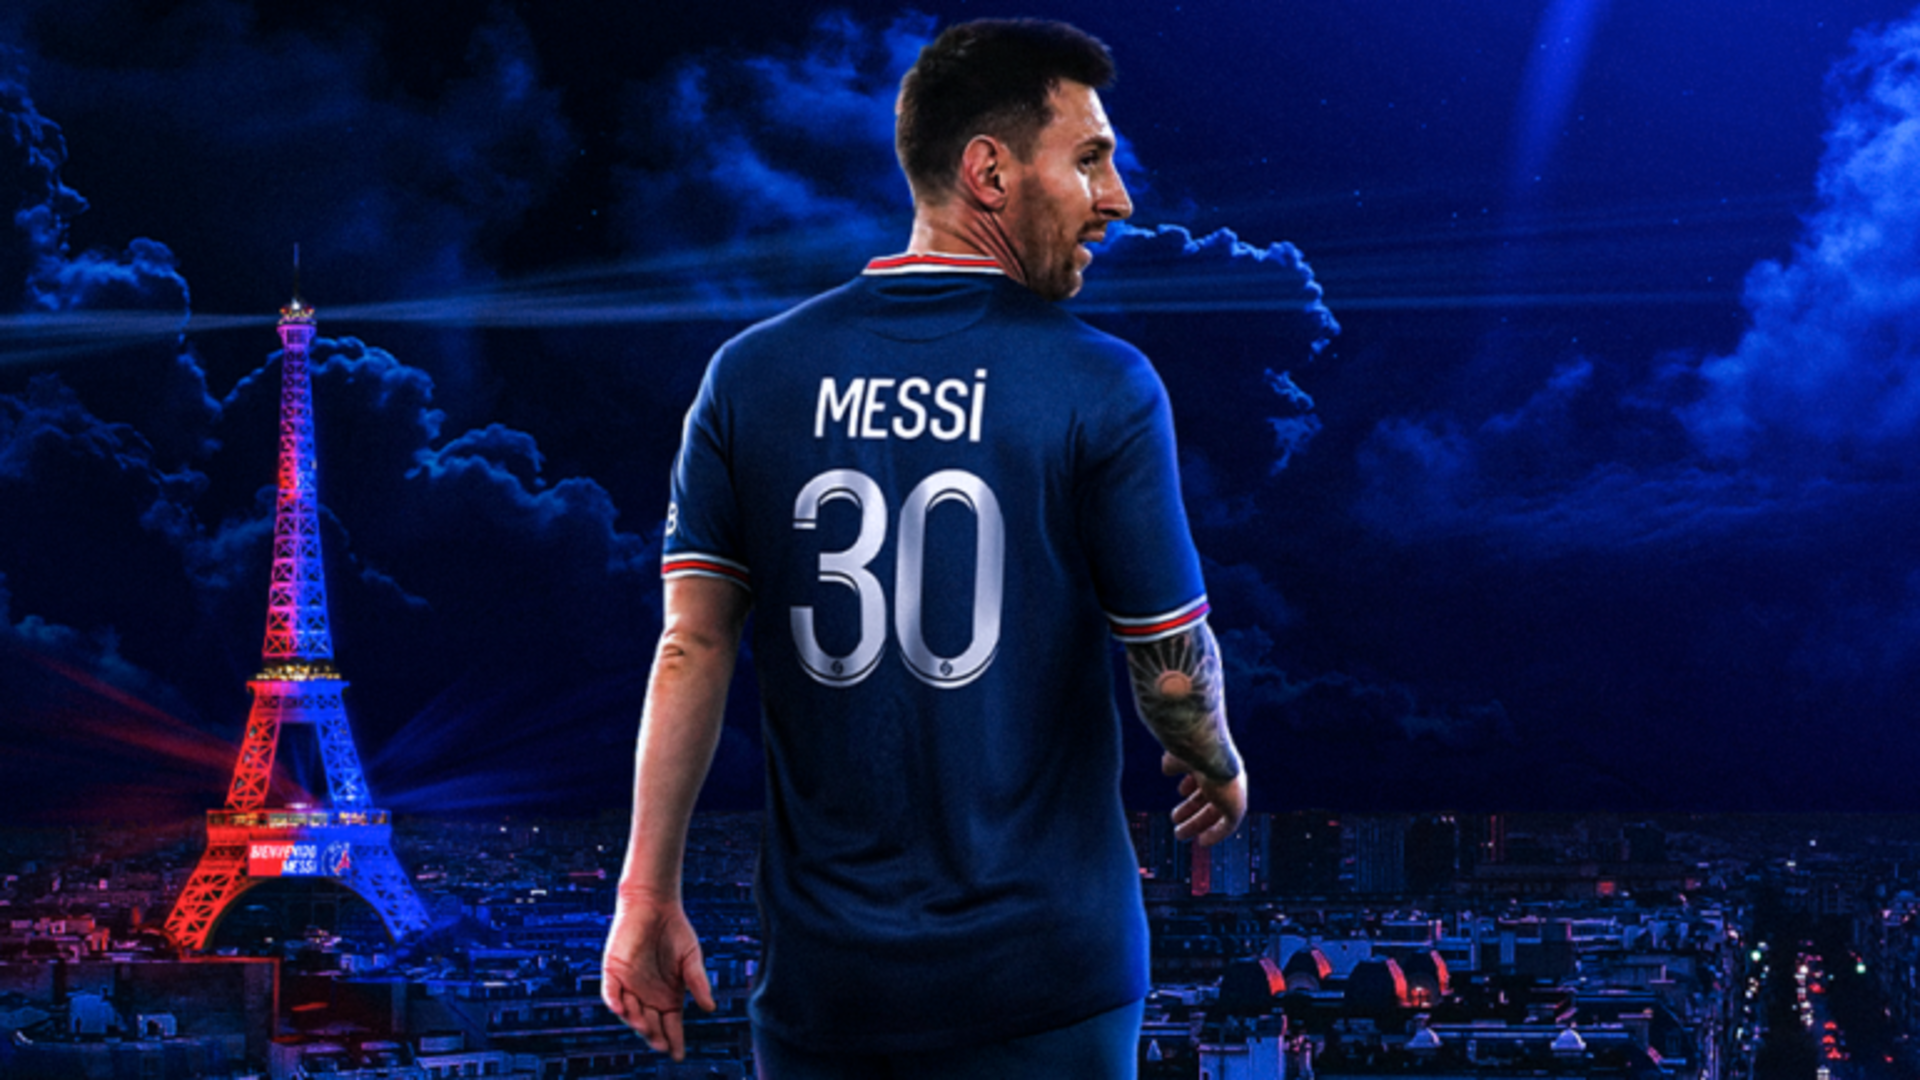 Đây là bức hình nền HD của Lionel Messi mà bạn không thể bỏ qua! Bức hình này đem lại vẻ đẹp hoàn hảo của ngôi sao bóng đá của chúng ta, với đầy đủ sức mạnh, năng lượng và khả năng. Với chất lượng hình ảnh tuyệt vời và thiết kế tinh tế, đây chắc chắn là một bức hình tuyệt vời cho bất kỳ fan Messi nào!